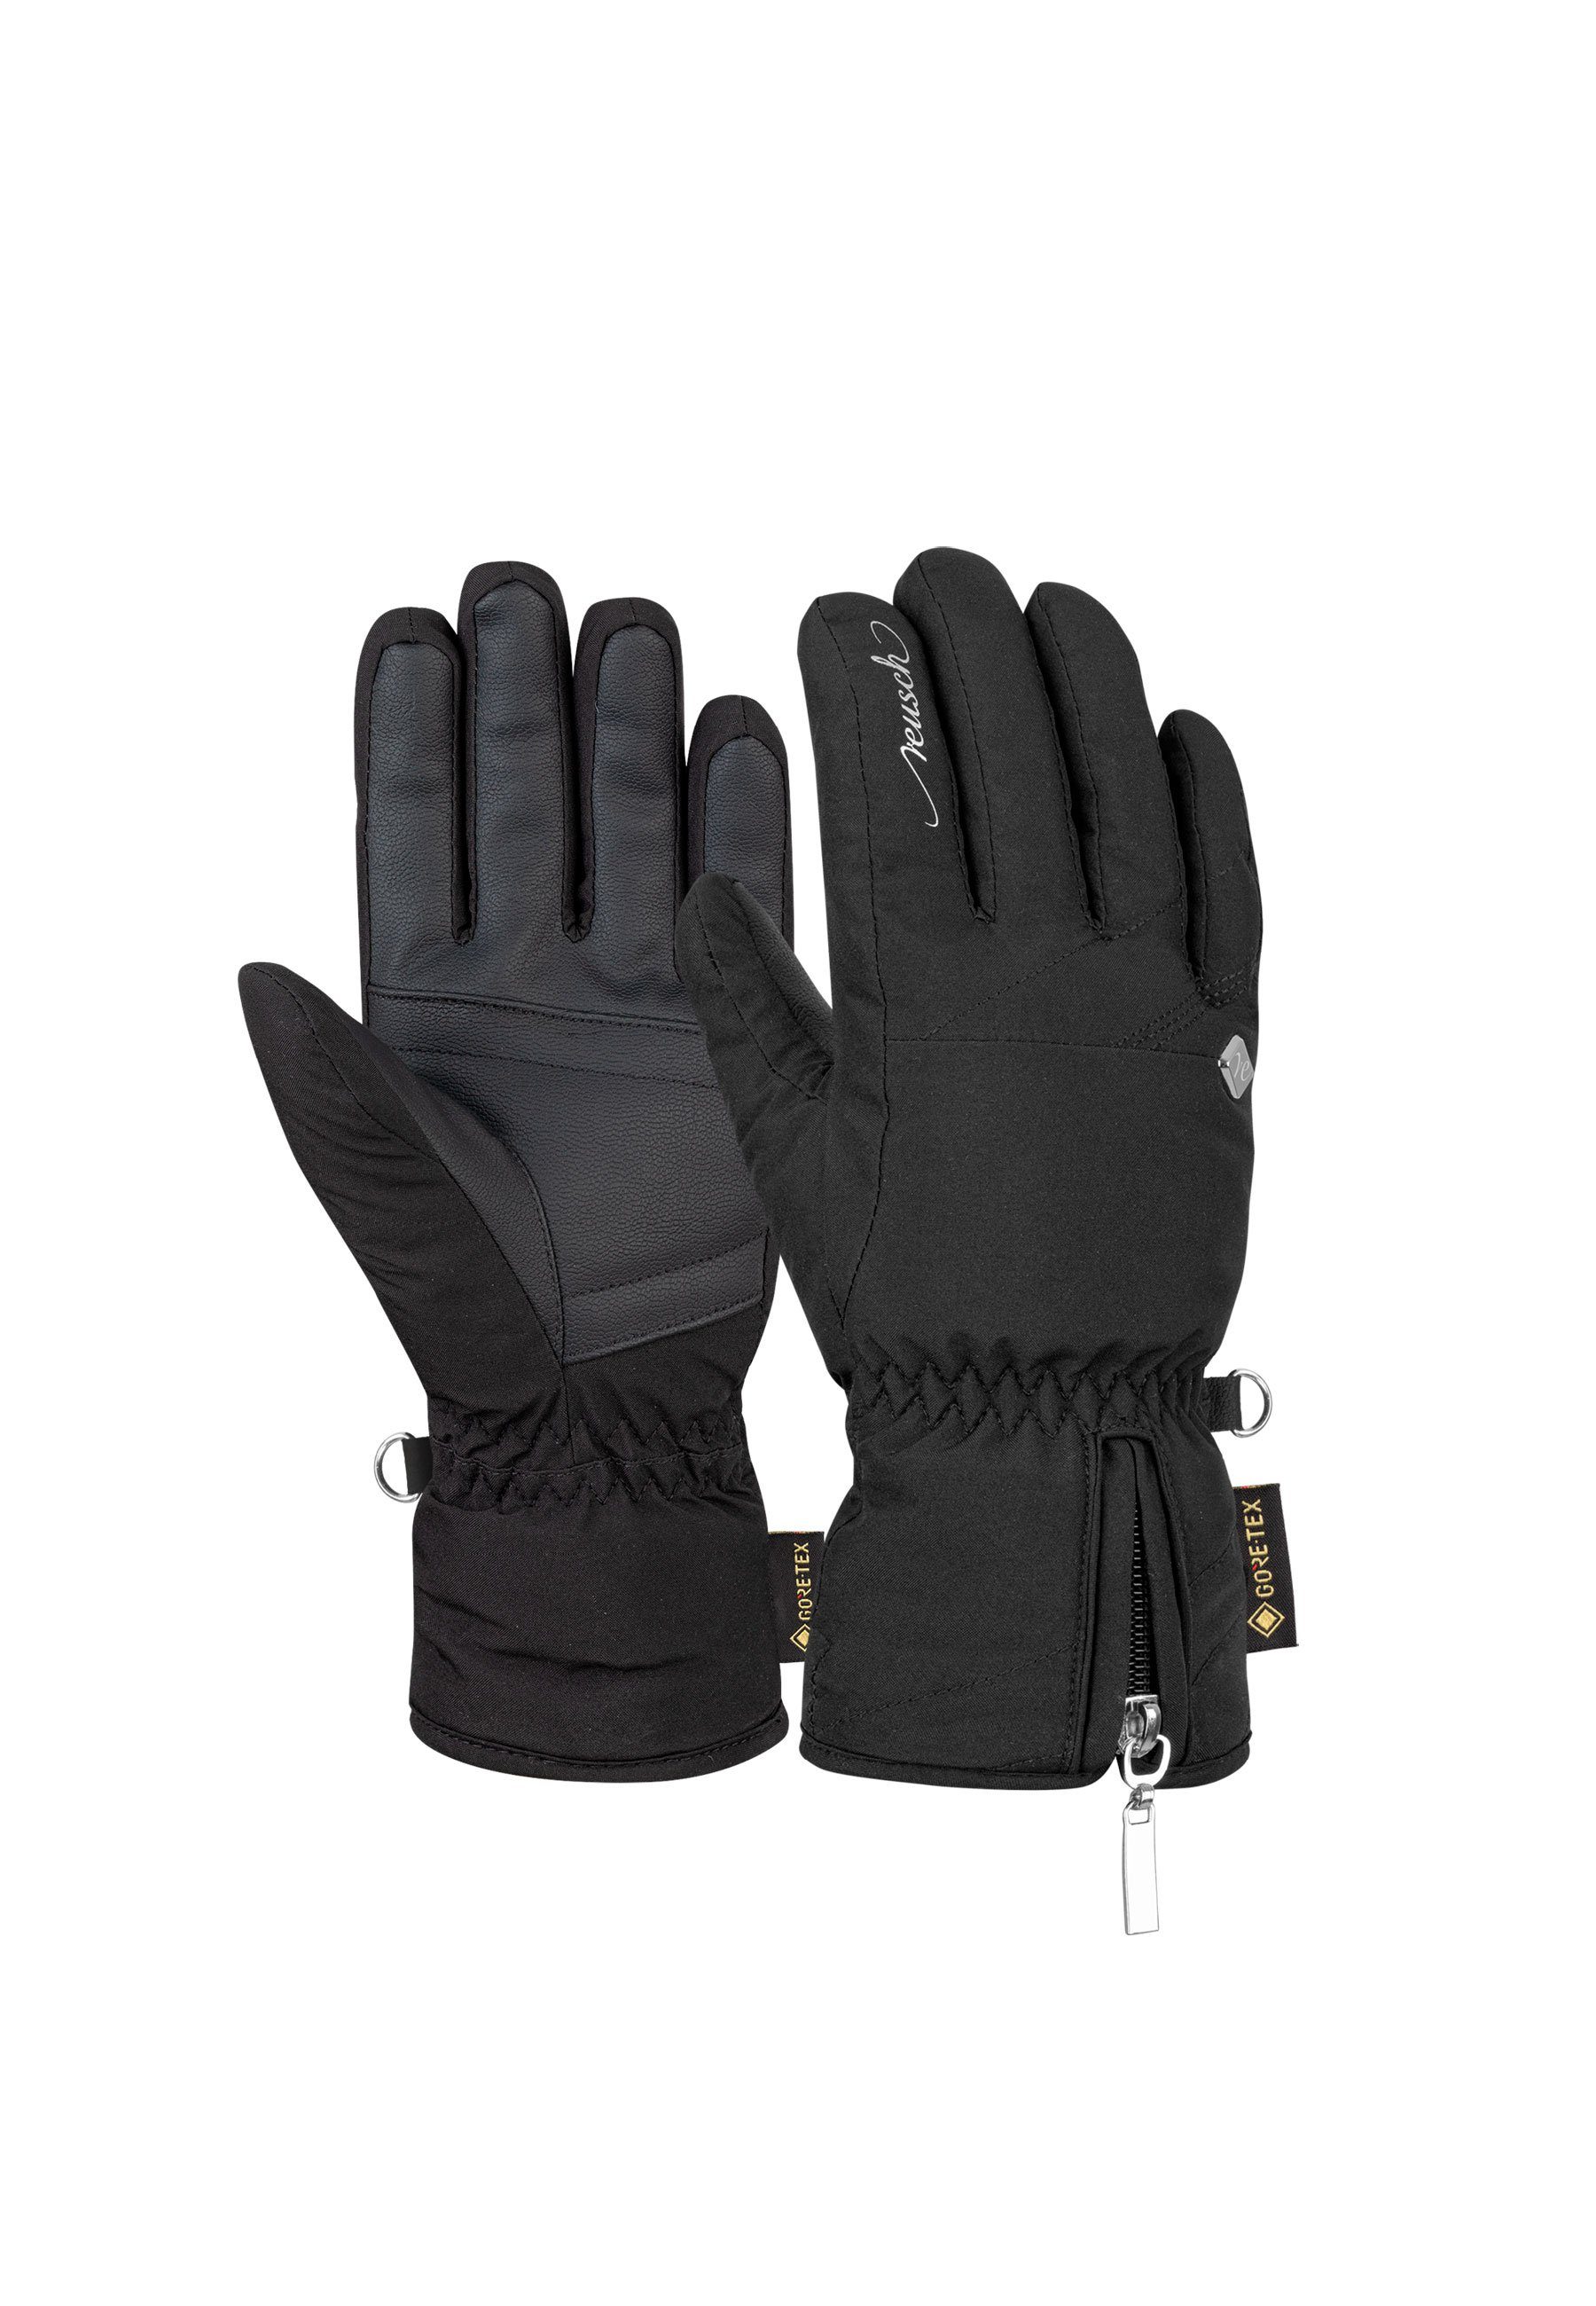 Reusch Skihandschuhe Selina GORE-TEX mit wasserdichter Funktionsmembran schwarz-silberfarben | Handschuhe